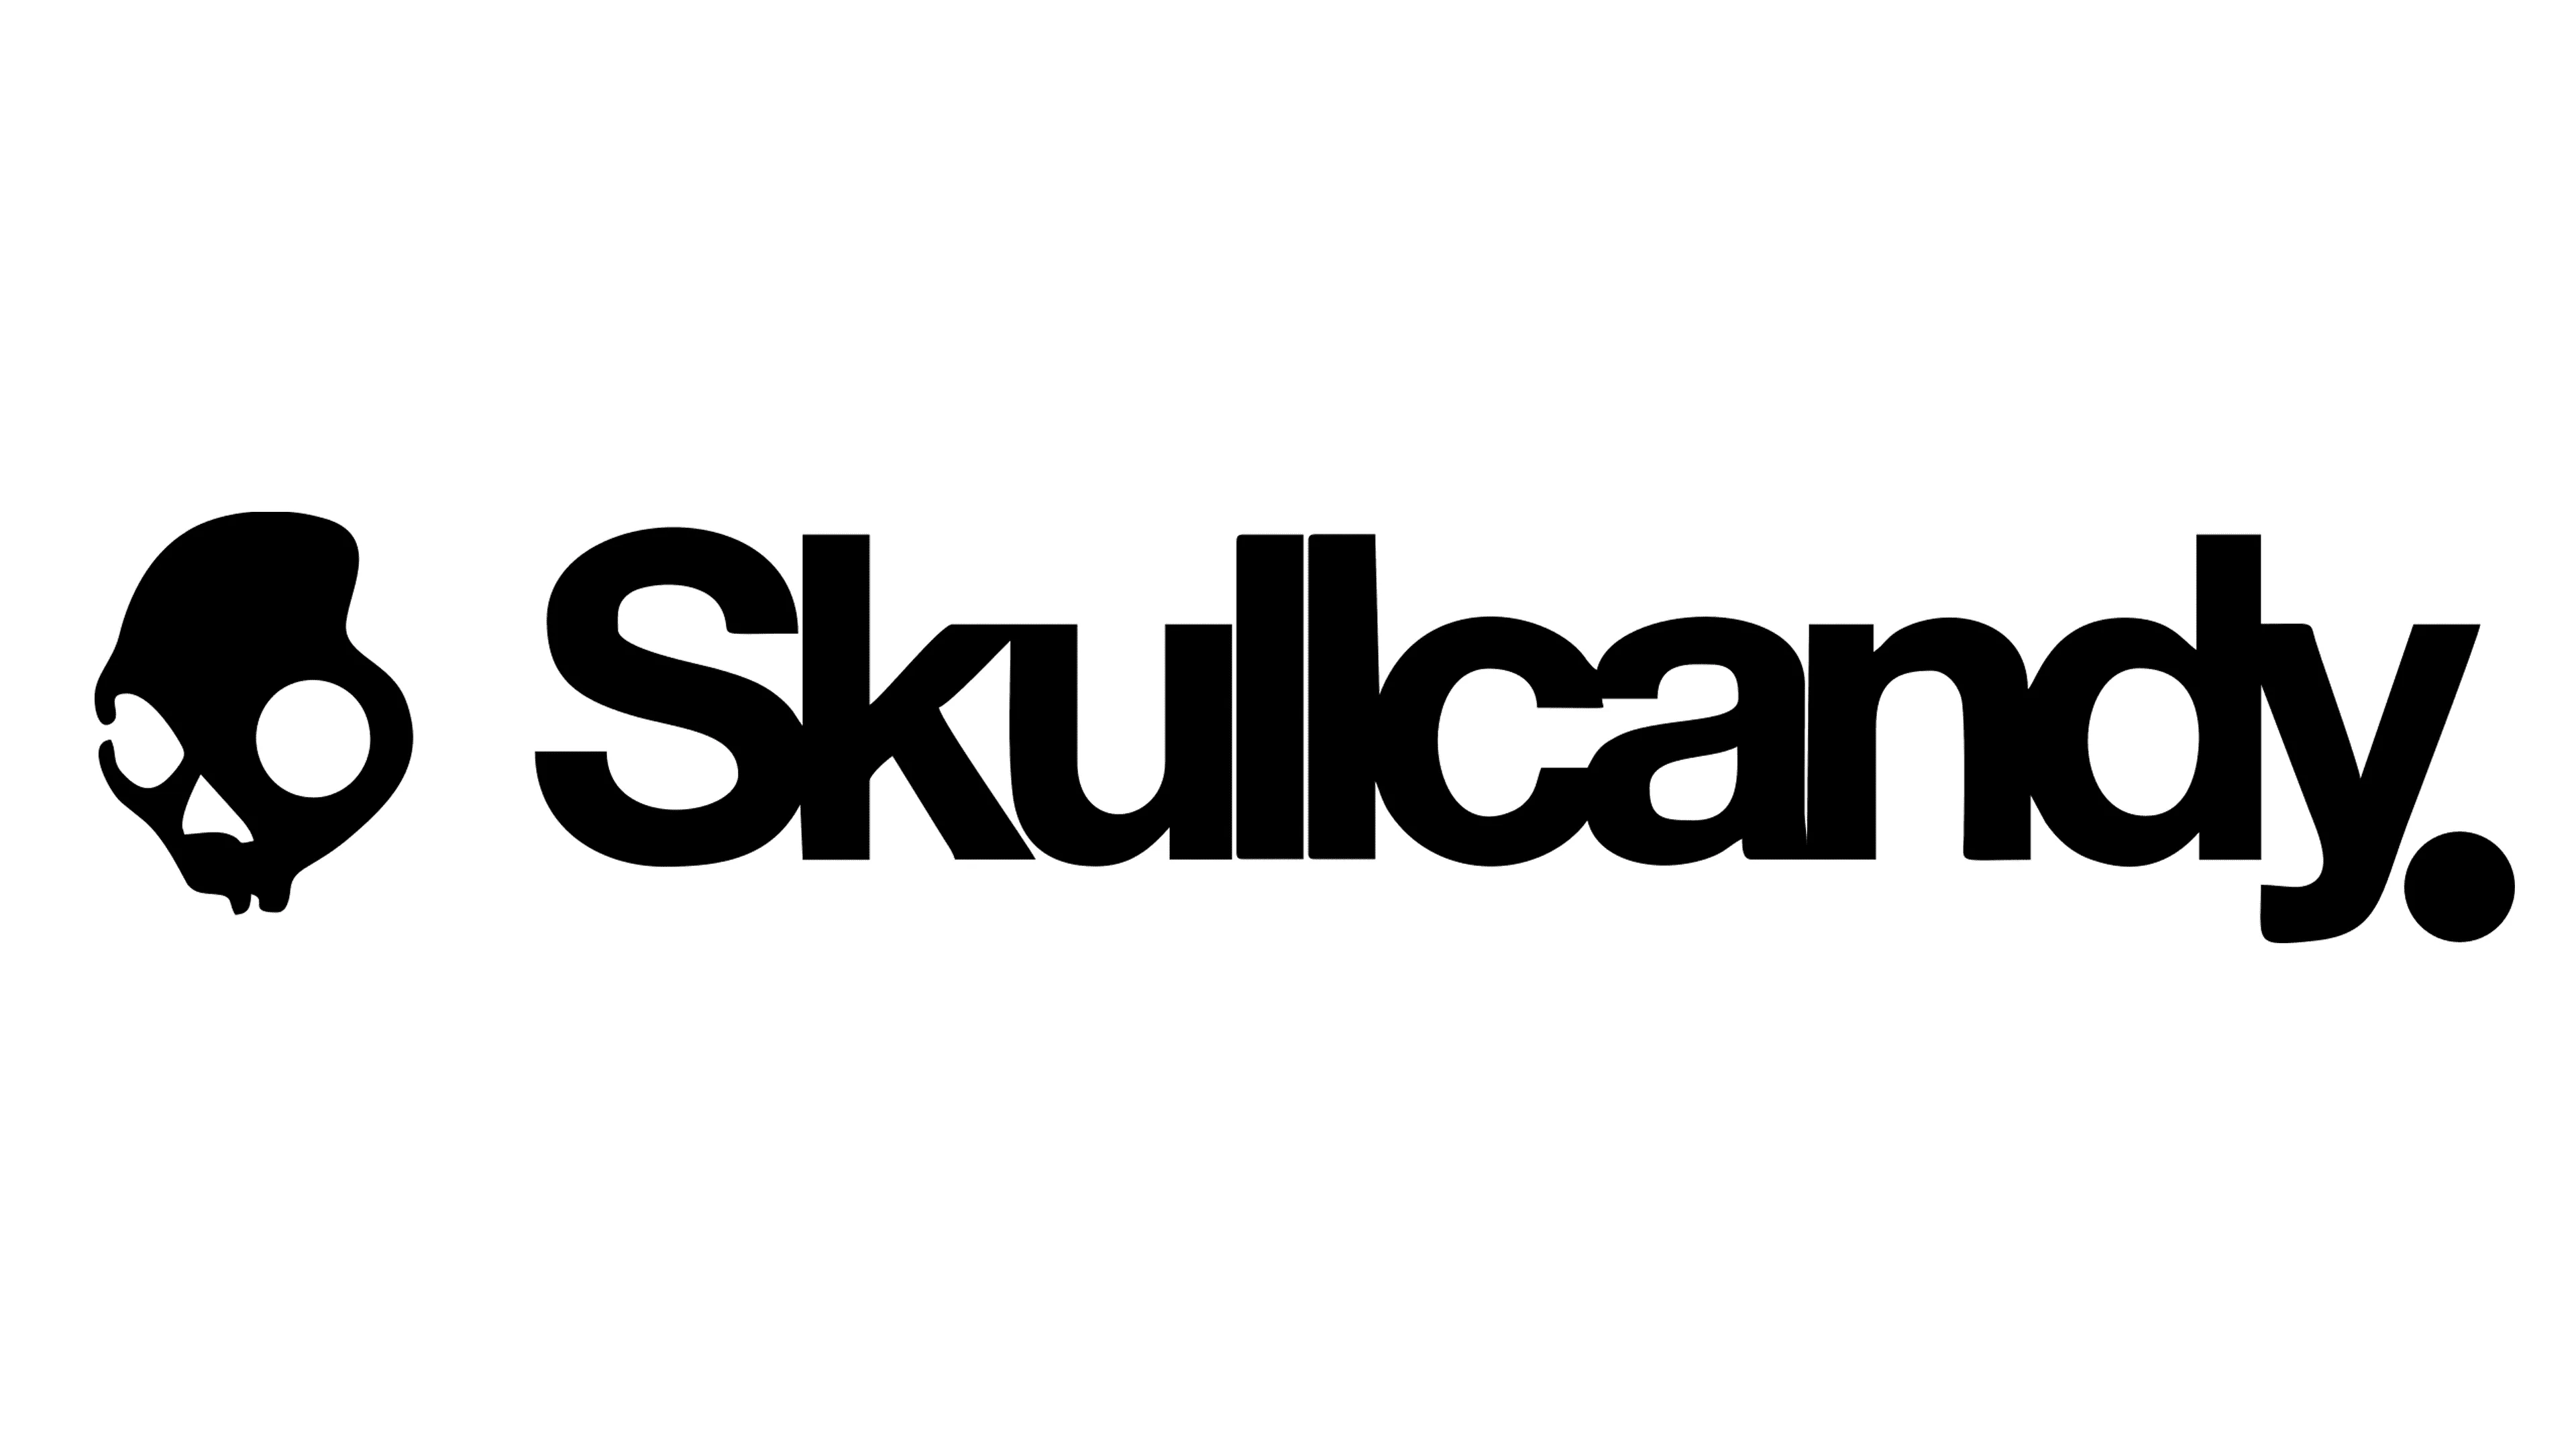 skullcandy